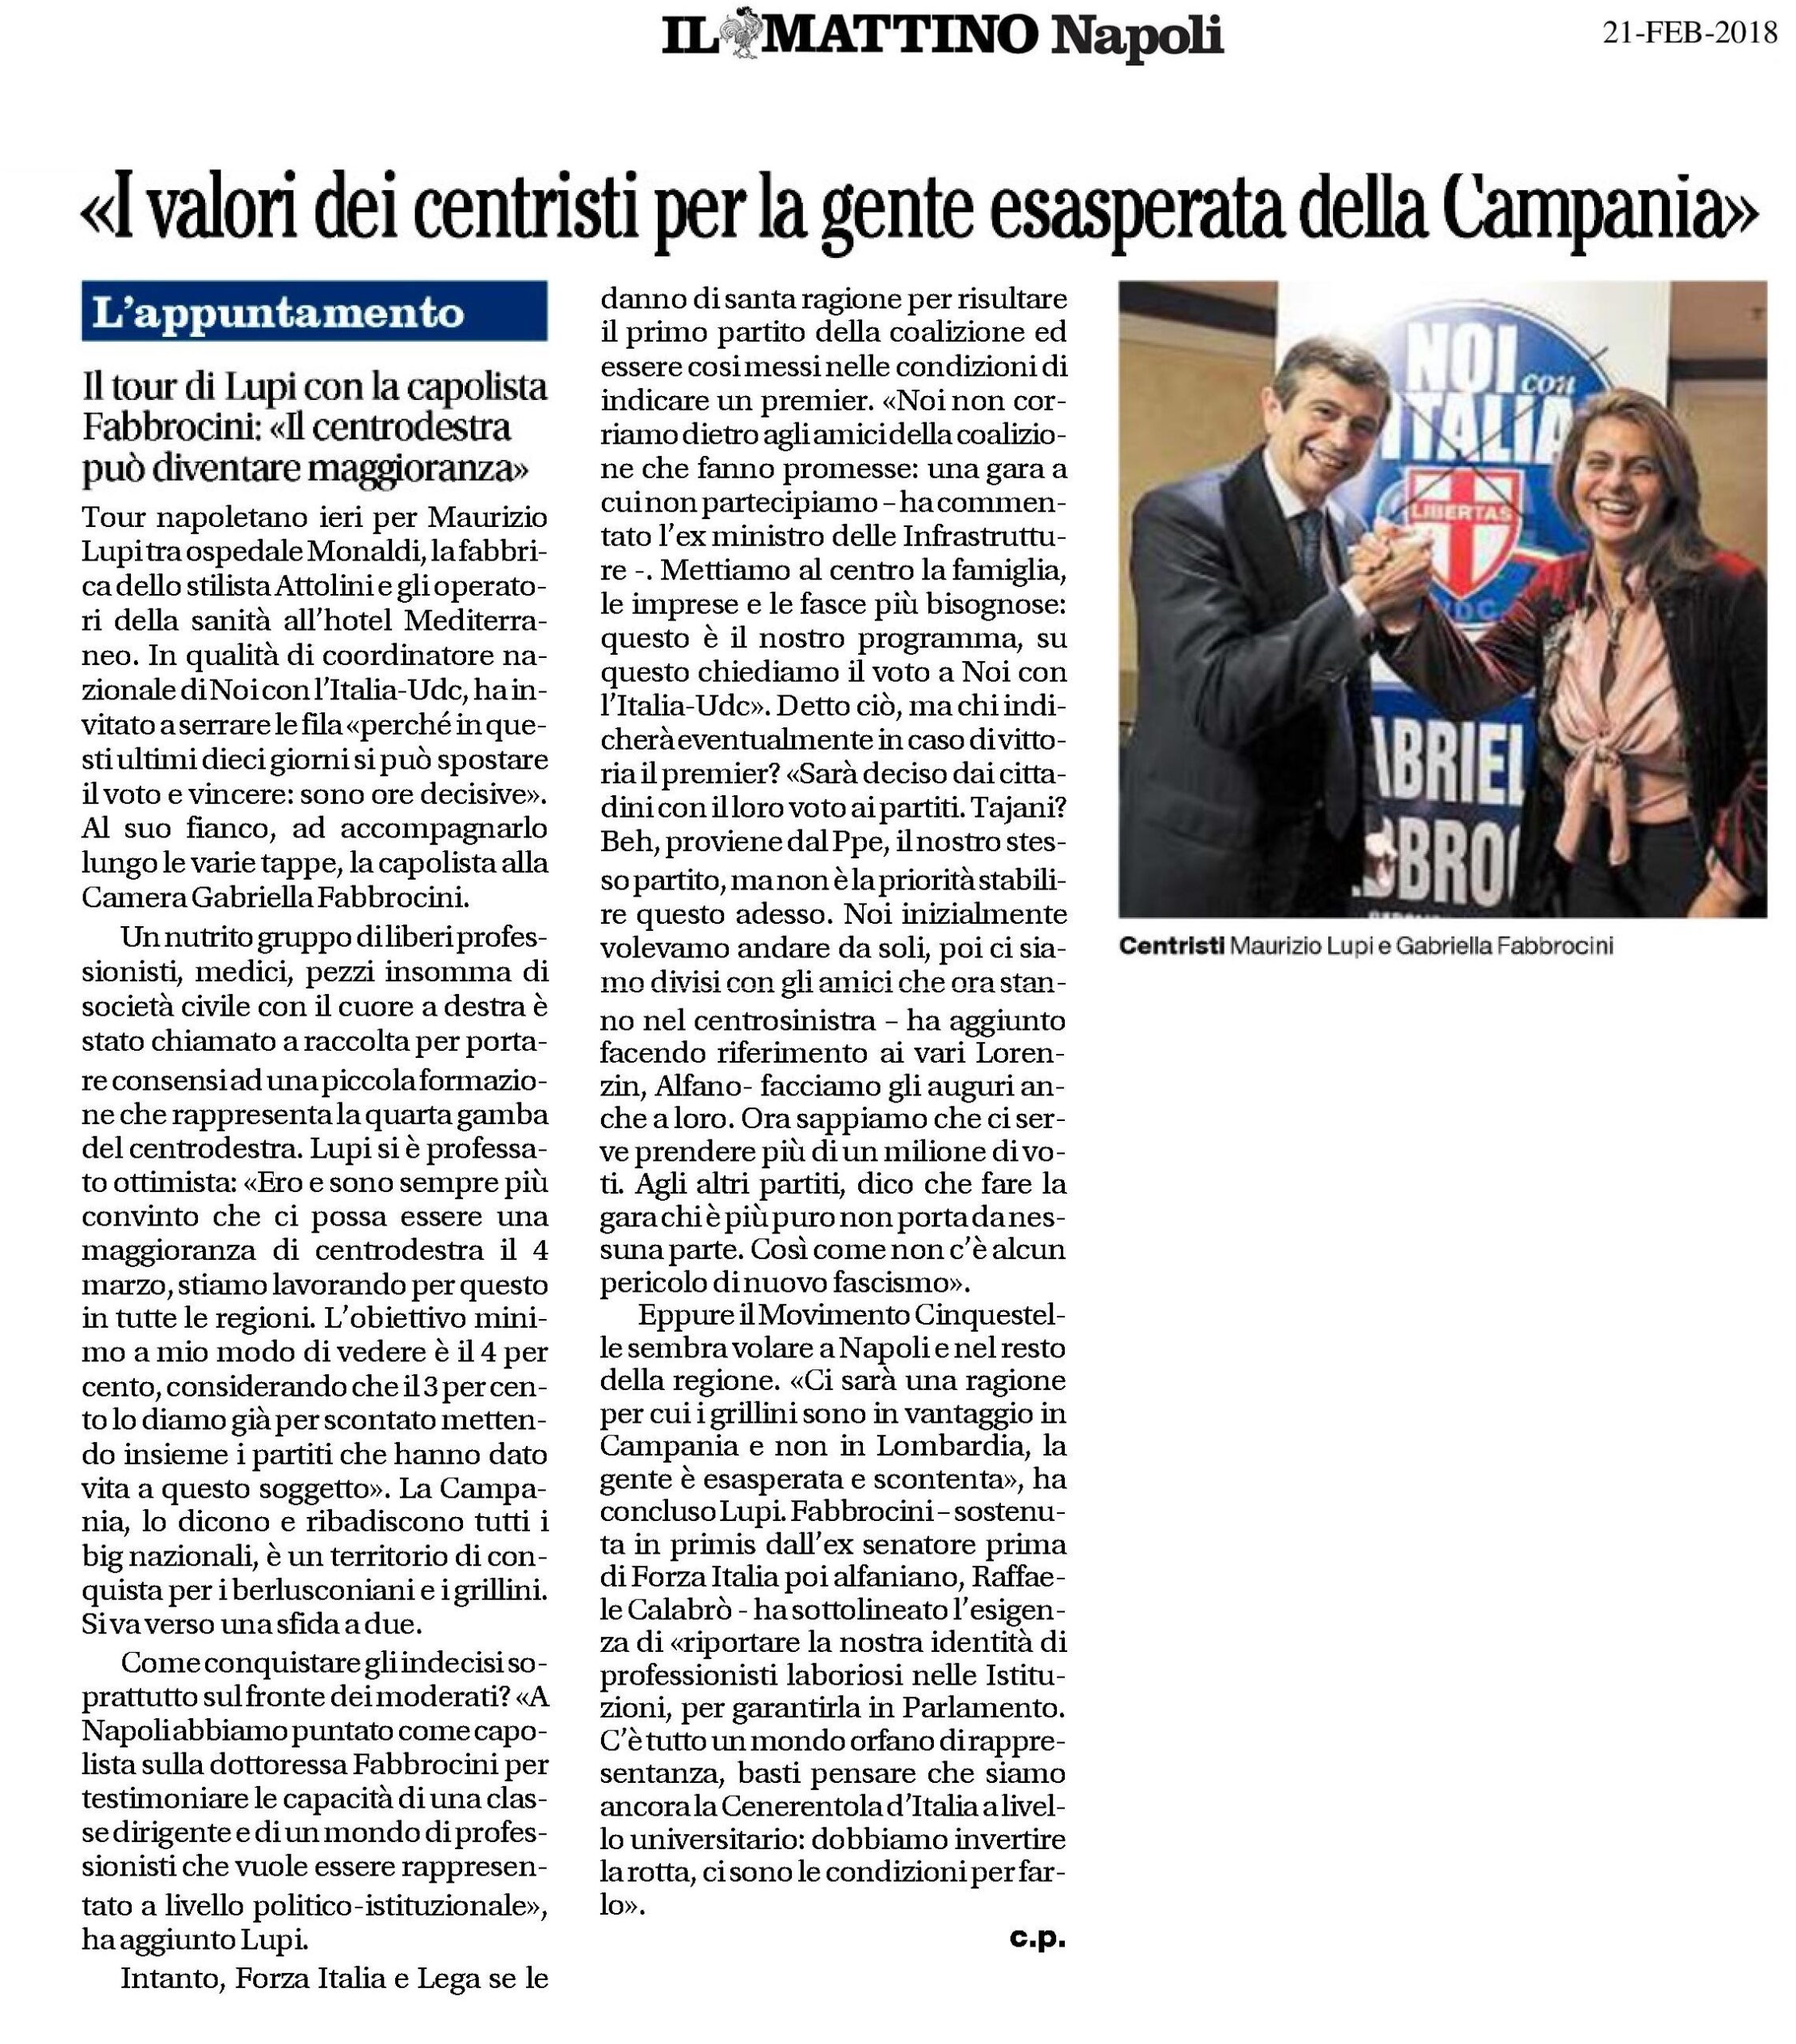  "I valori dei centristi per la gente esasperata della Campania"